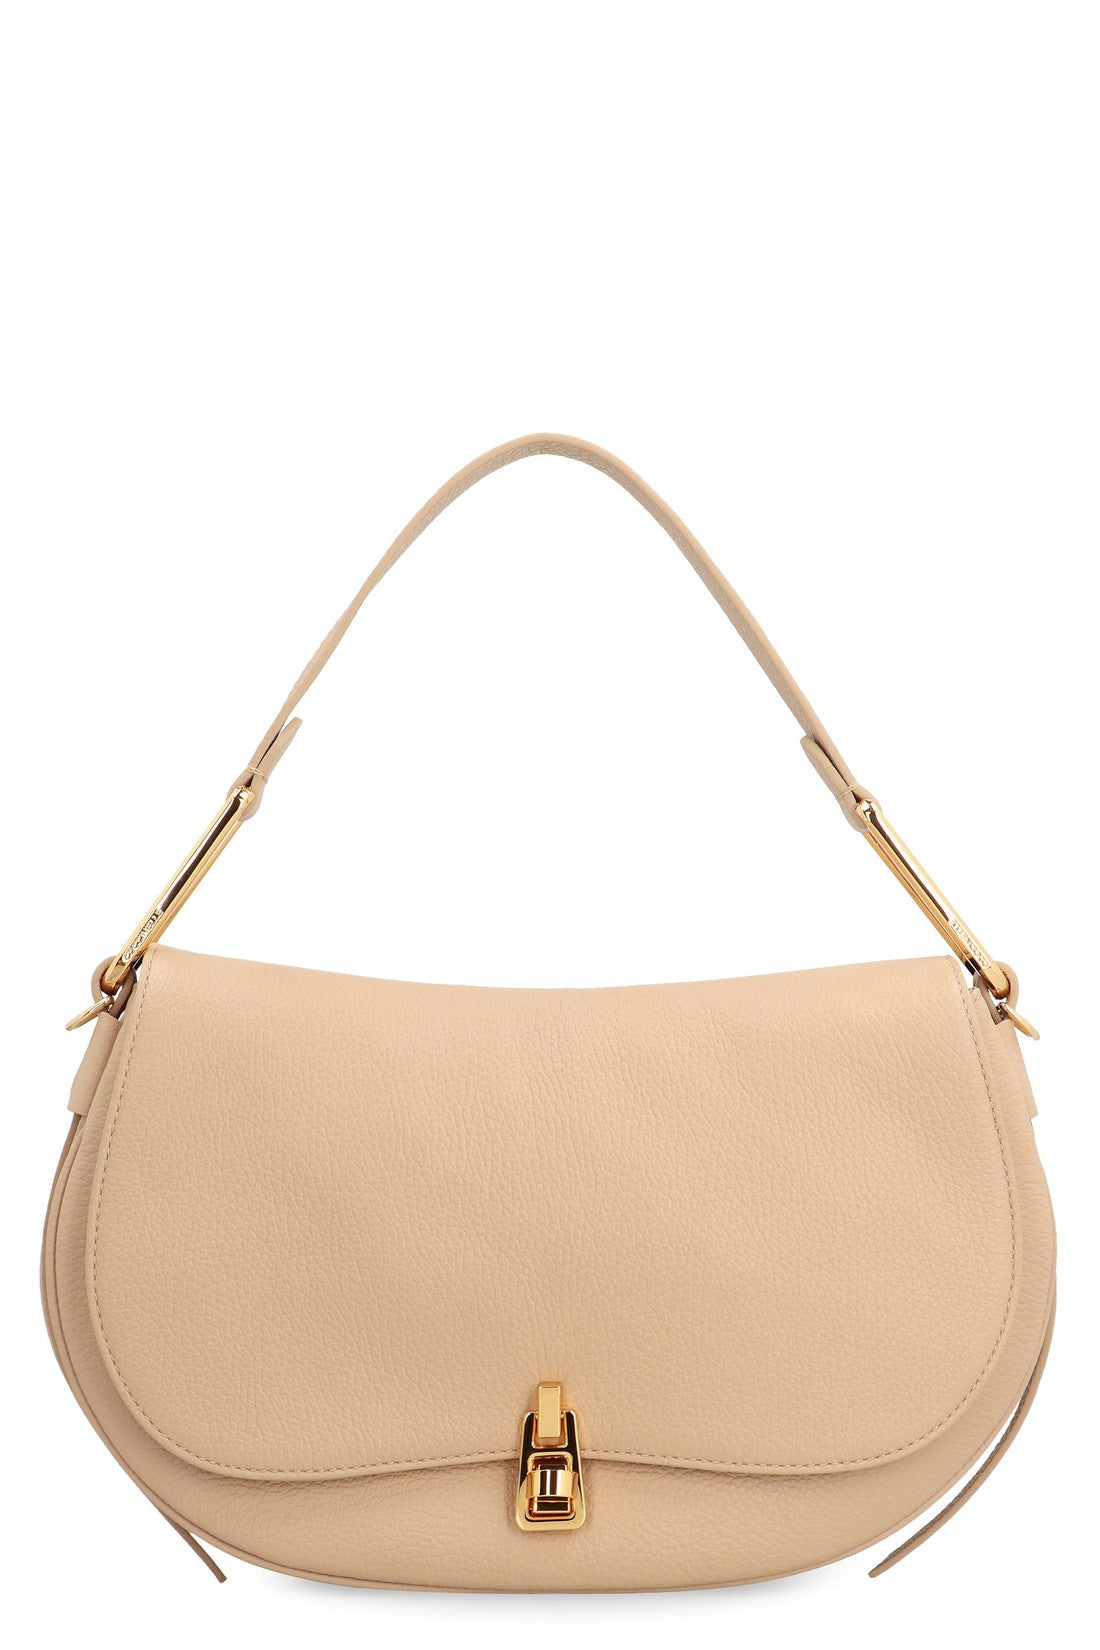 Coccinelle-OUTLET-SALE-Magie Soft leather handbag-ARCHIVIST